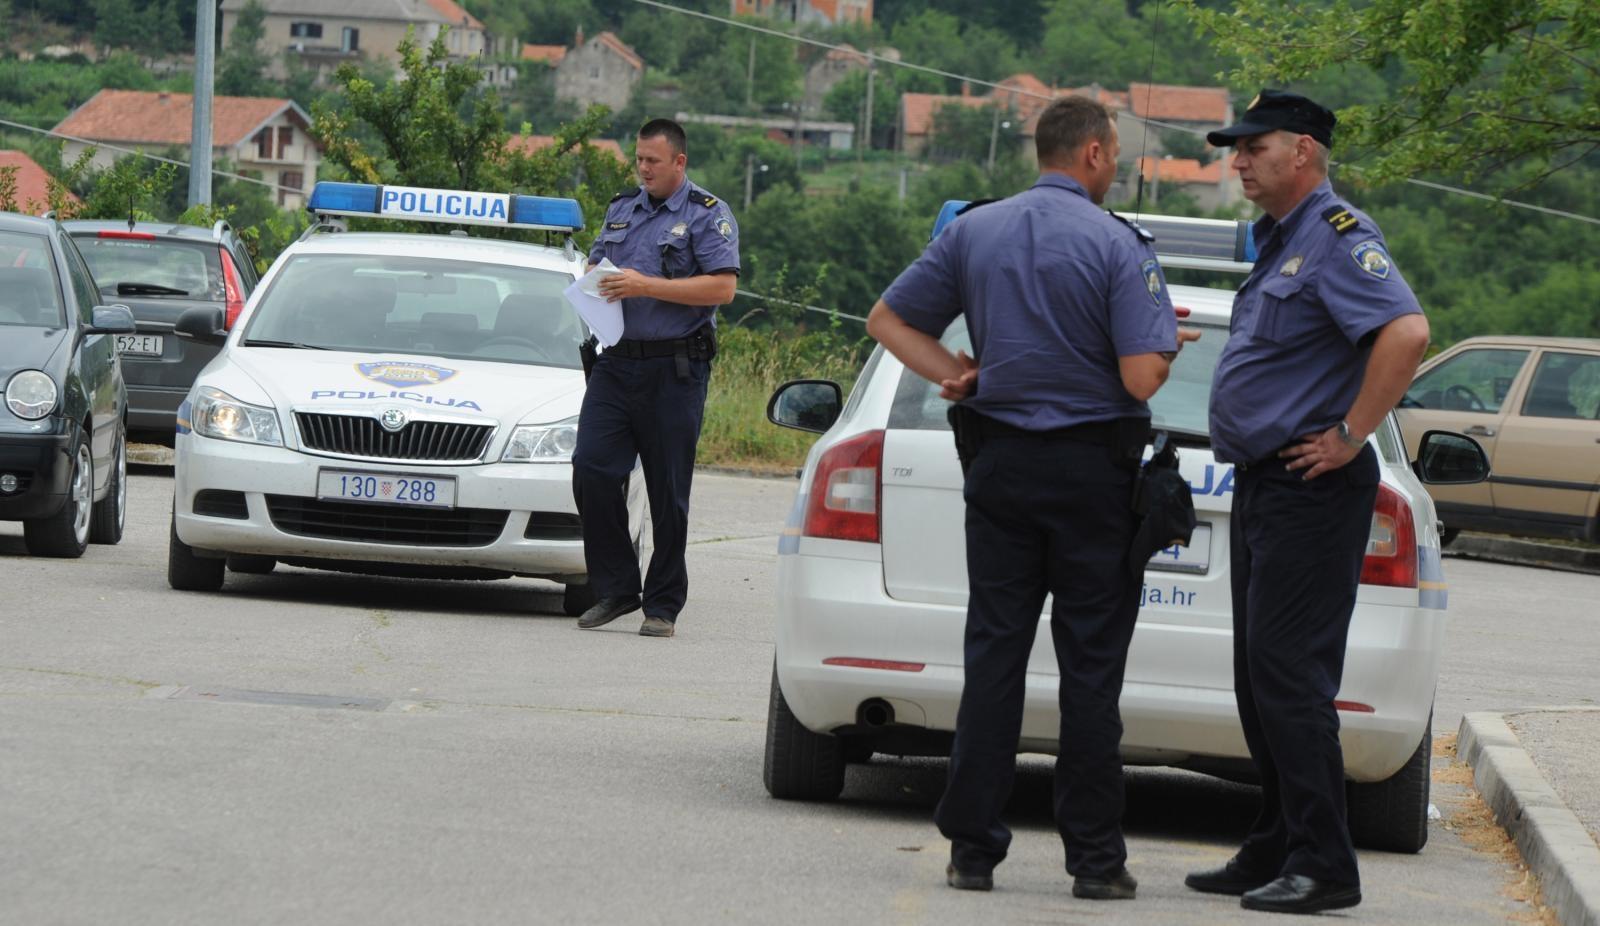 Užas u Kninu: U parkiranom automobilu pronađeno mrtvo dijete